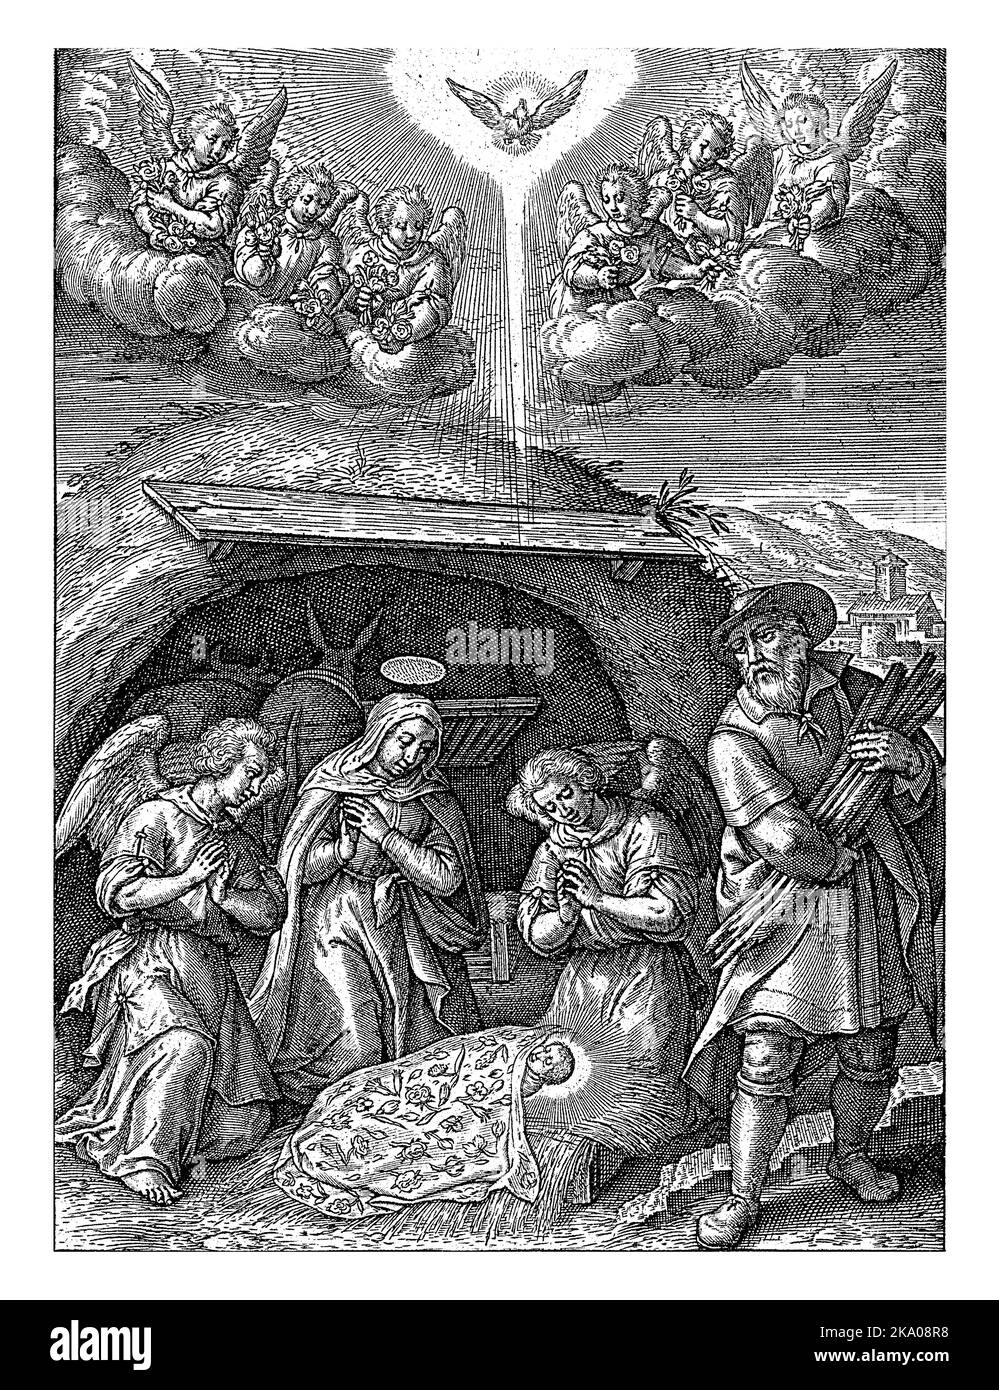 Adorazione del Cristo Bambino da parte di Maria e due Angeli, Hieronymus Wierix, 1563 - prima del 1619 nella stalla di Betlemme Maria si inginocchia, insieme a due Foto Stock